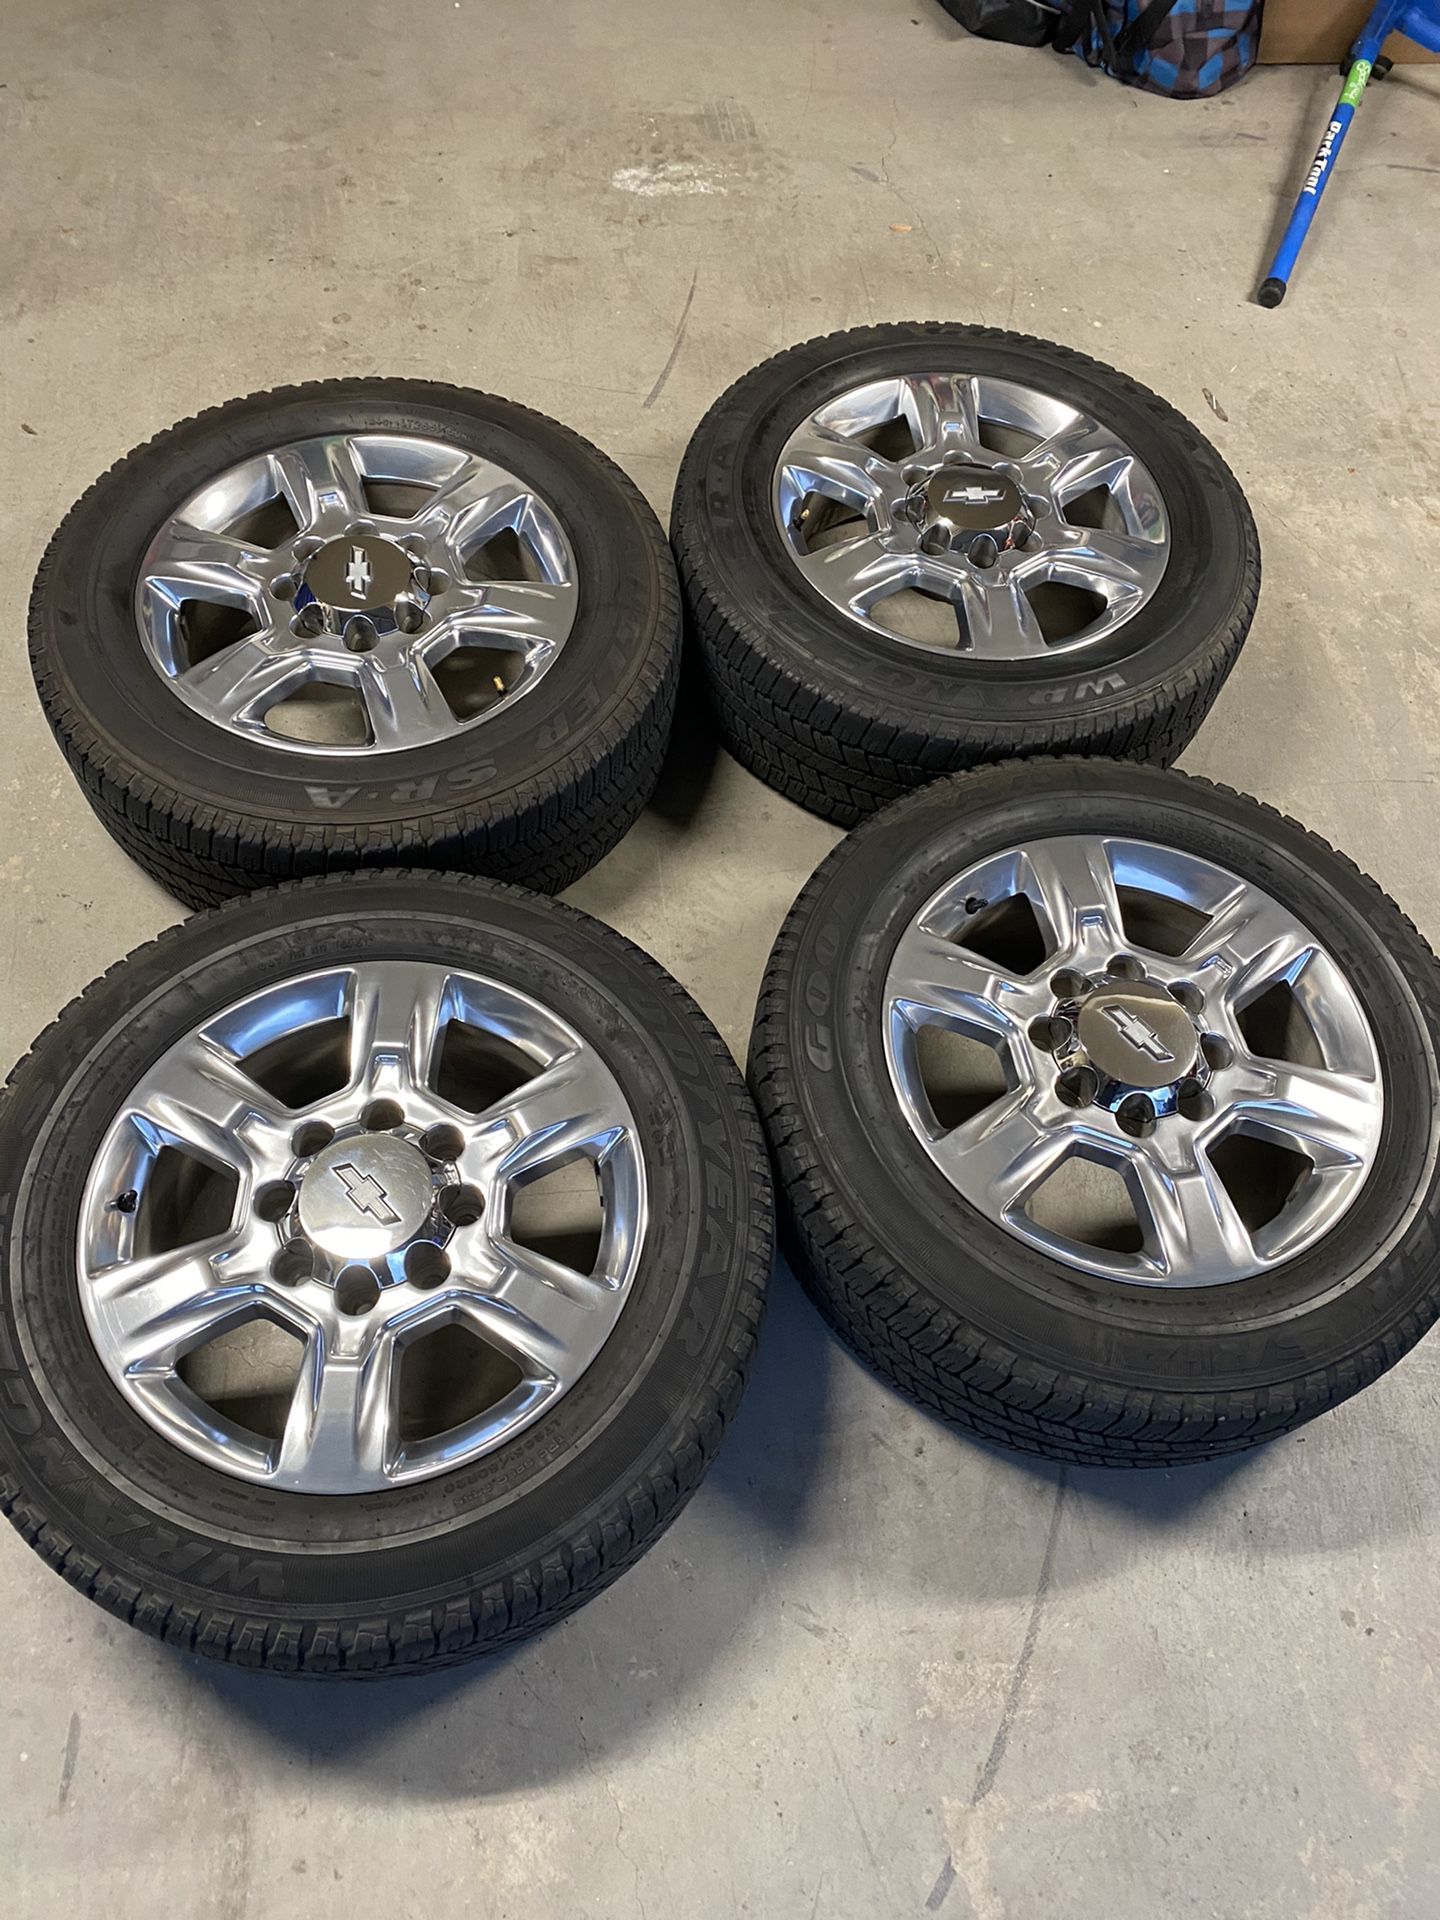 Gm 20” Wheels And Tires 8 Lug 8x180 2500hd Silverado Sierra For Sale In